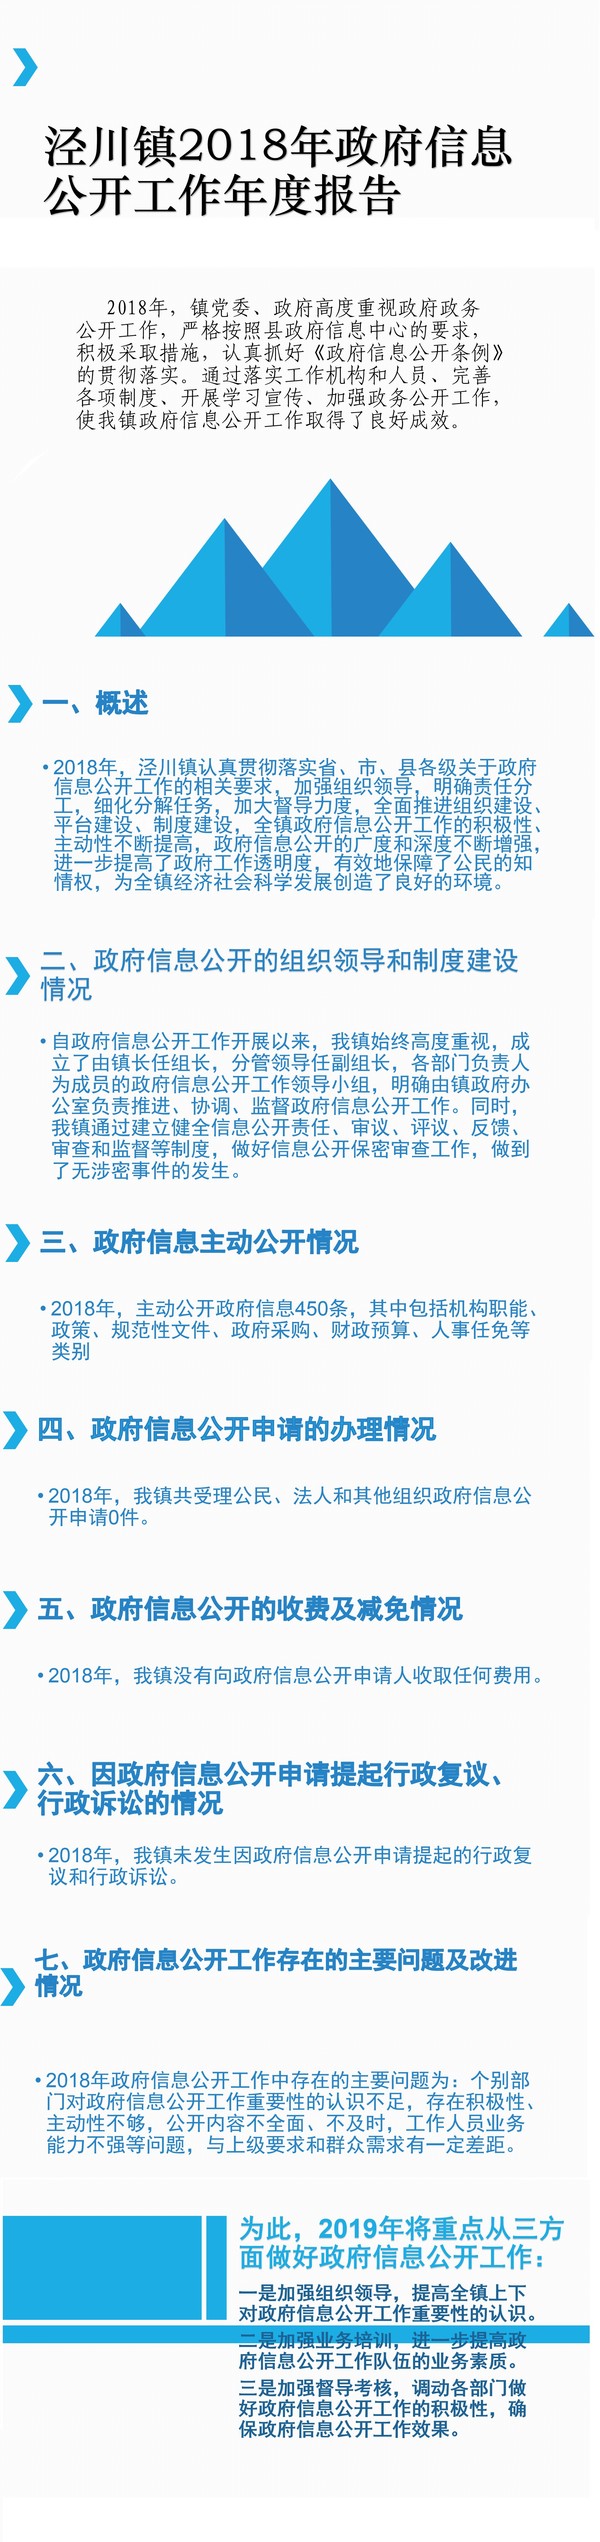 泾川镇2018年政府信息公开工作年度报告1.jpg